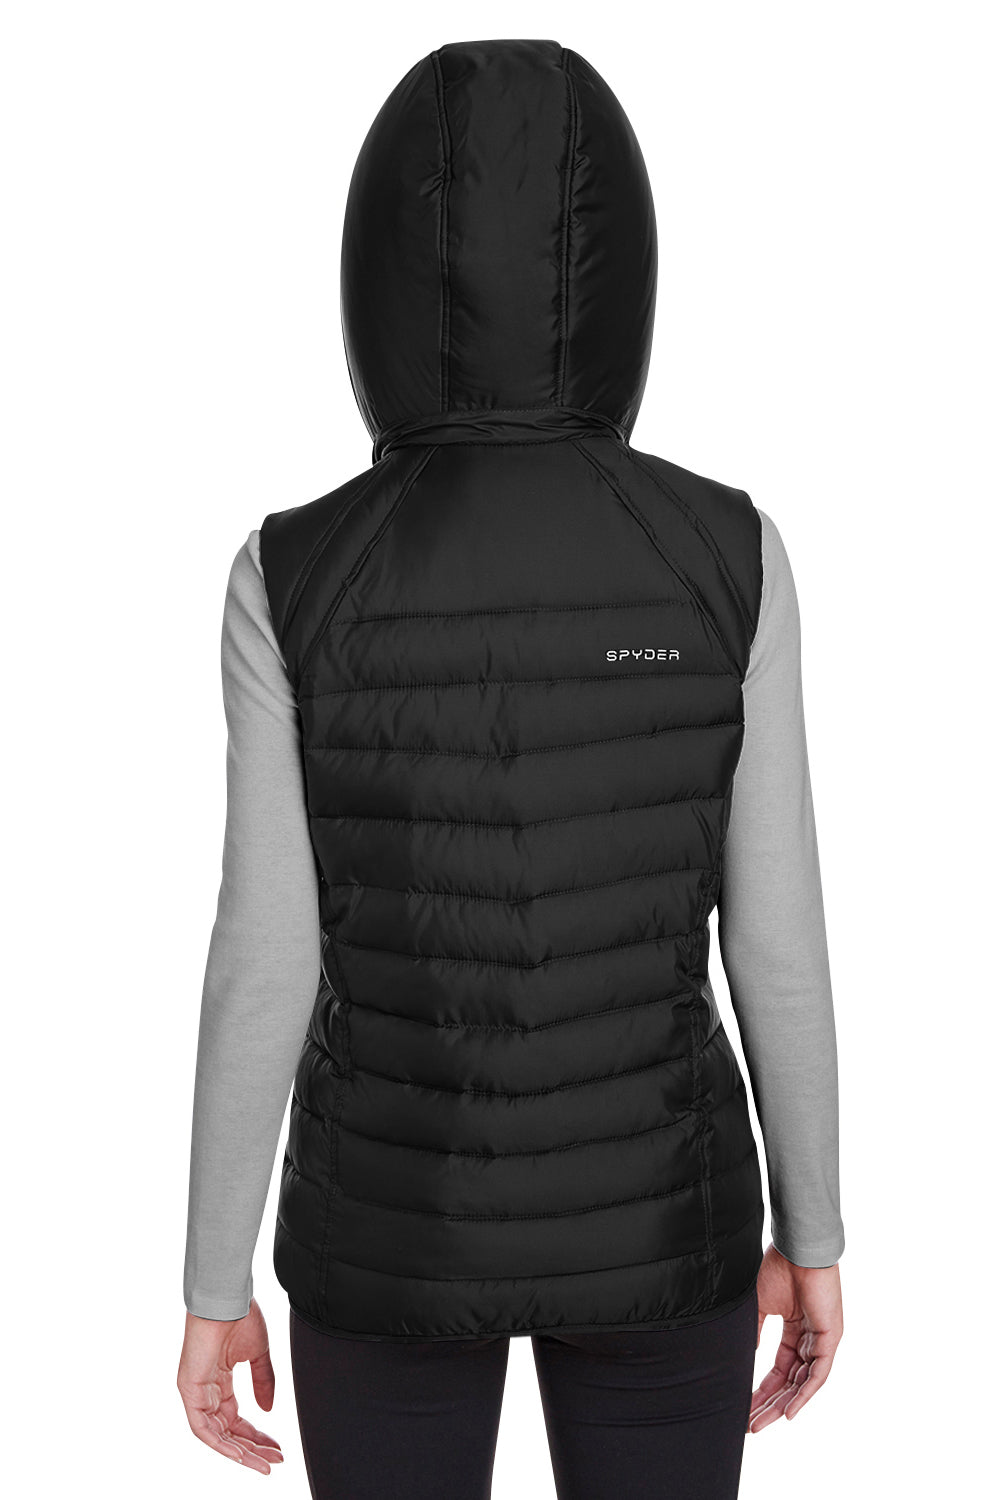 Spyder S16641 Womens Supreme Full Zip Hooded Puffer Vest Black Back